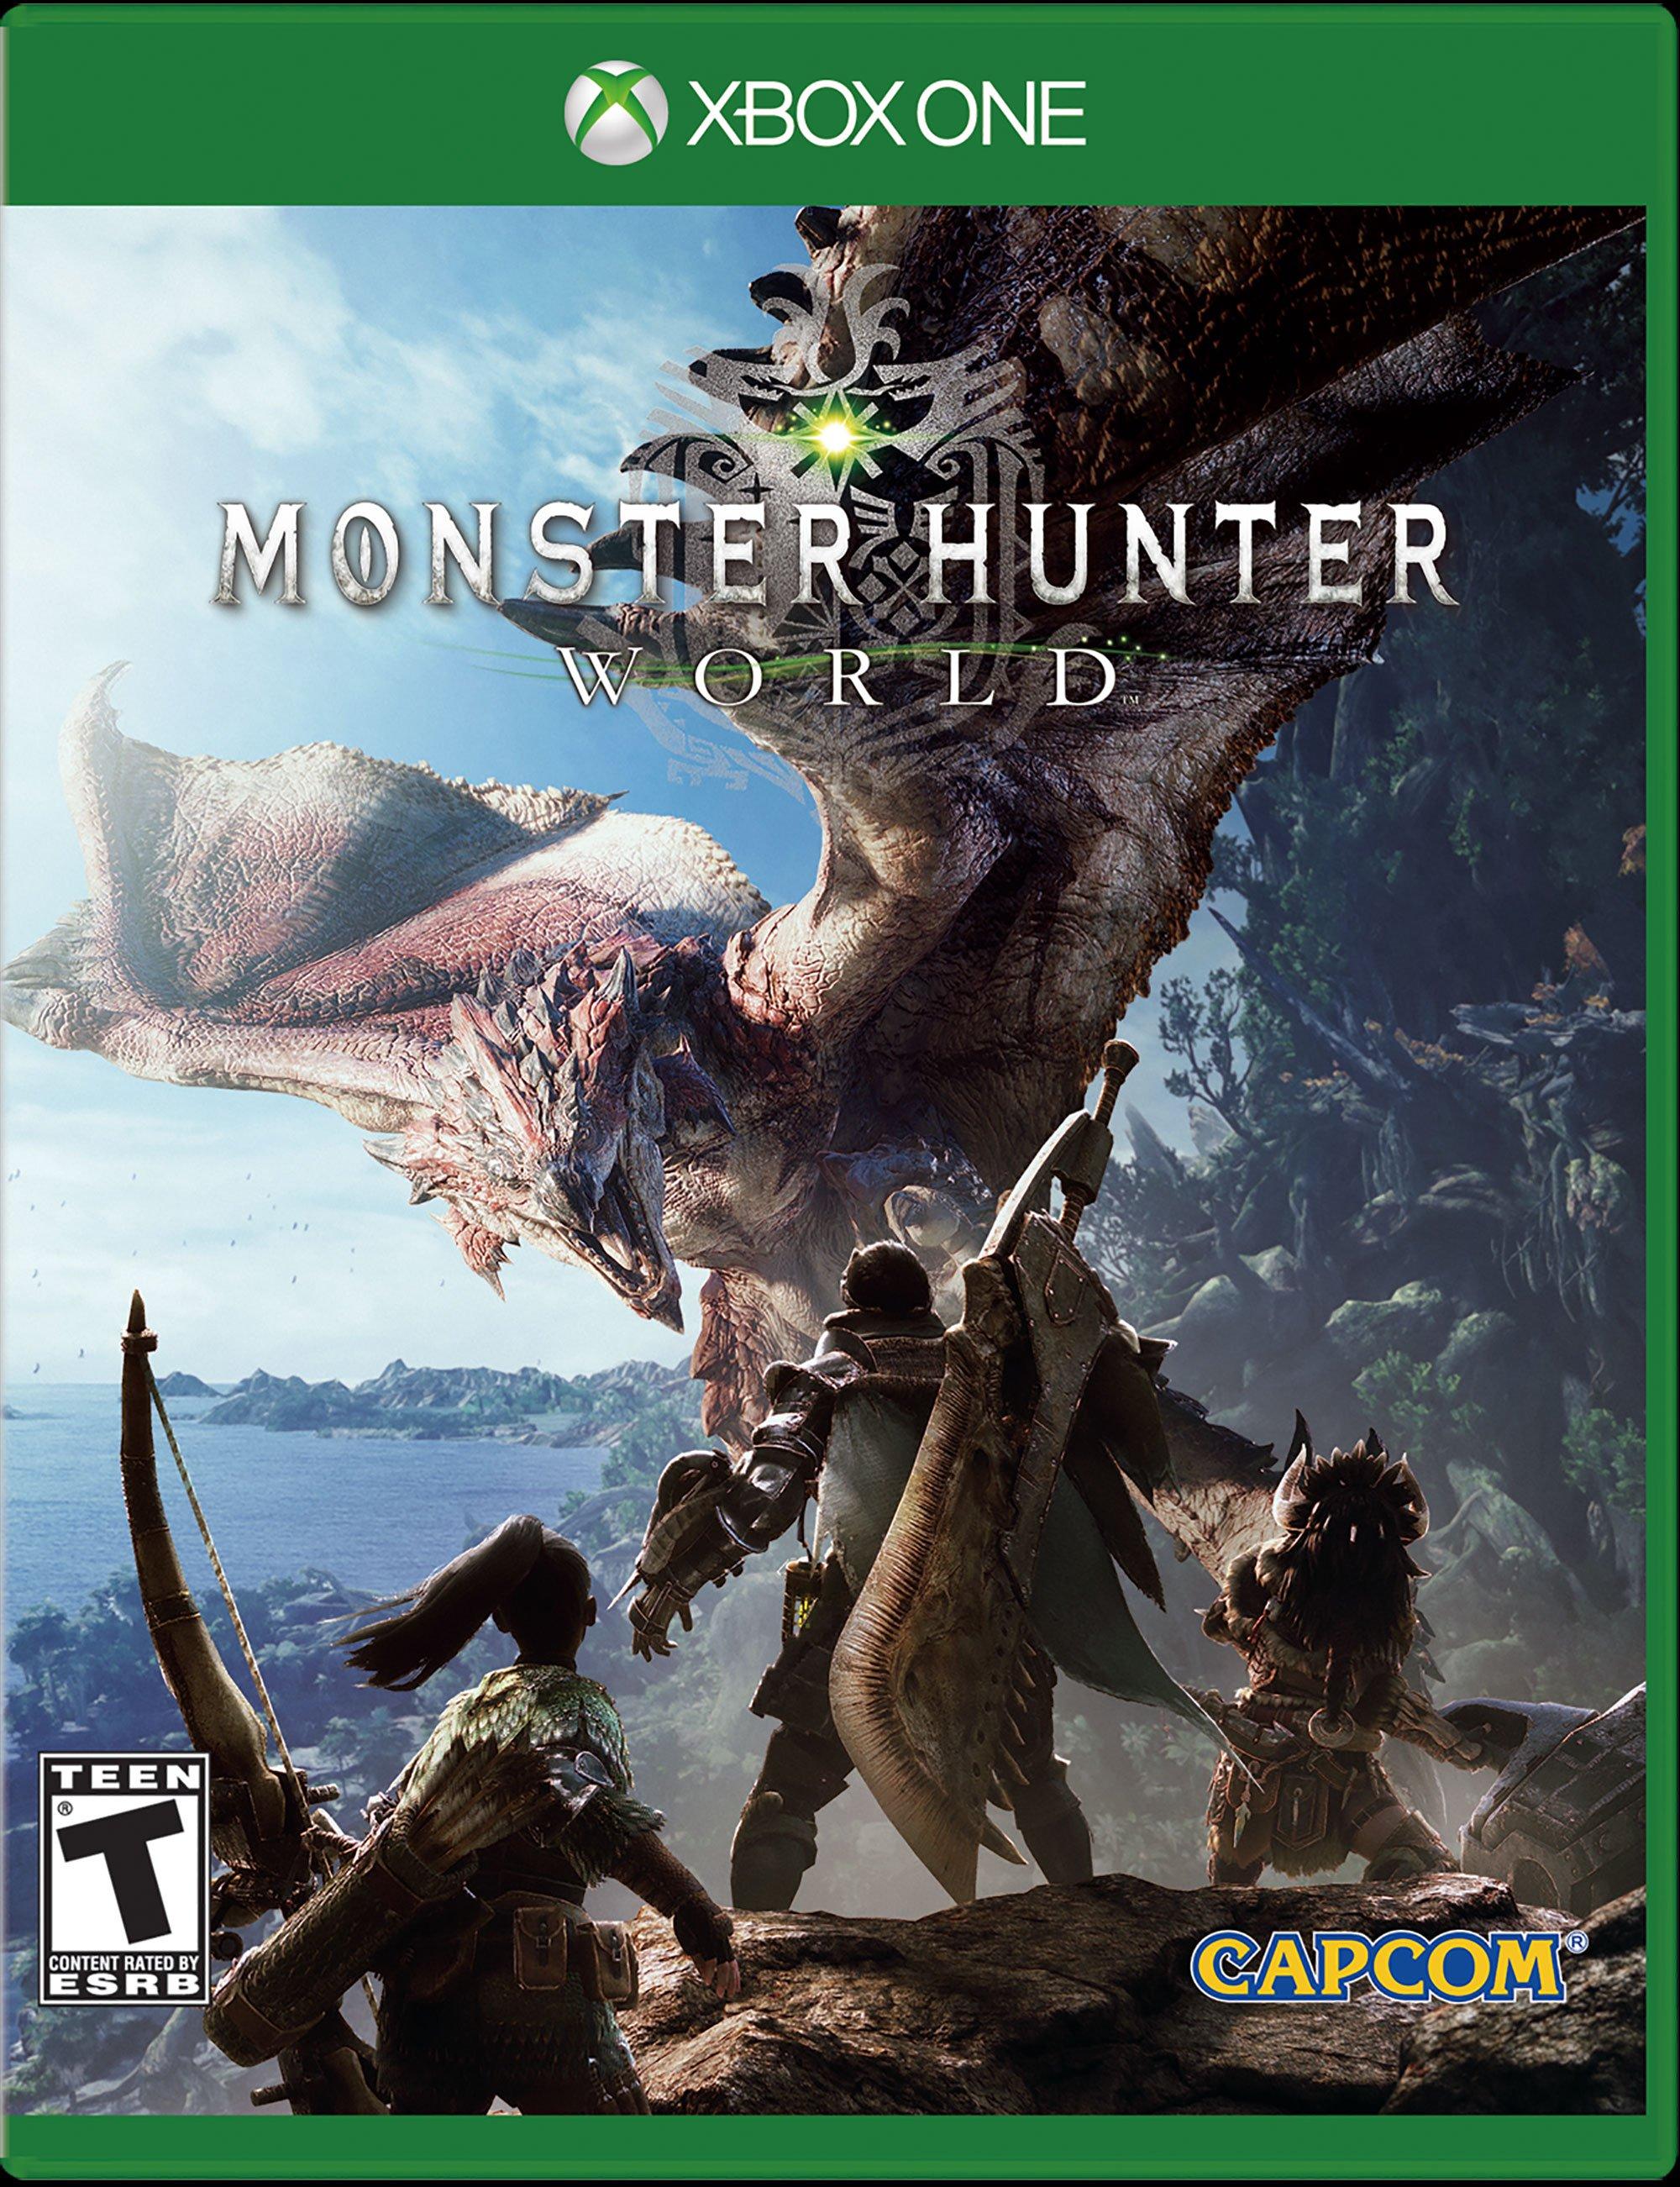 Monster Hunter: World Digital Deluxe Edition